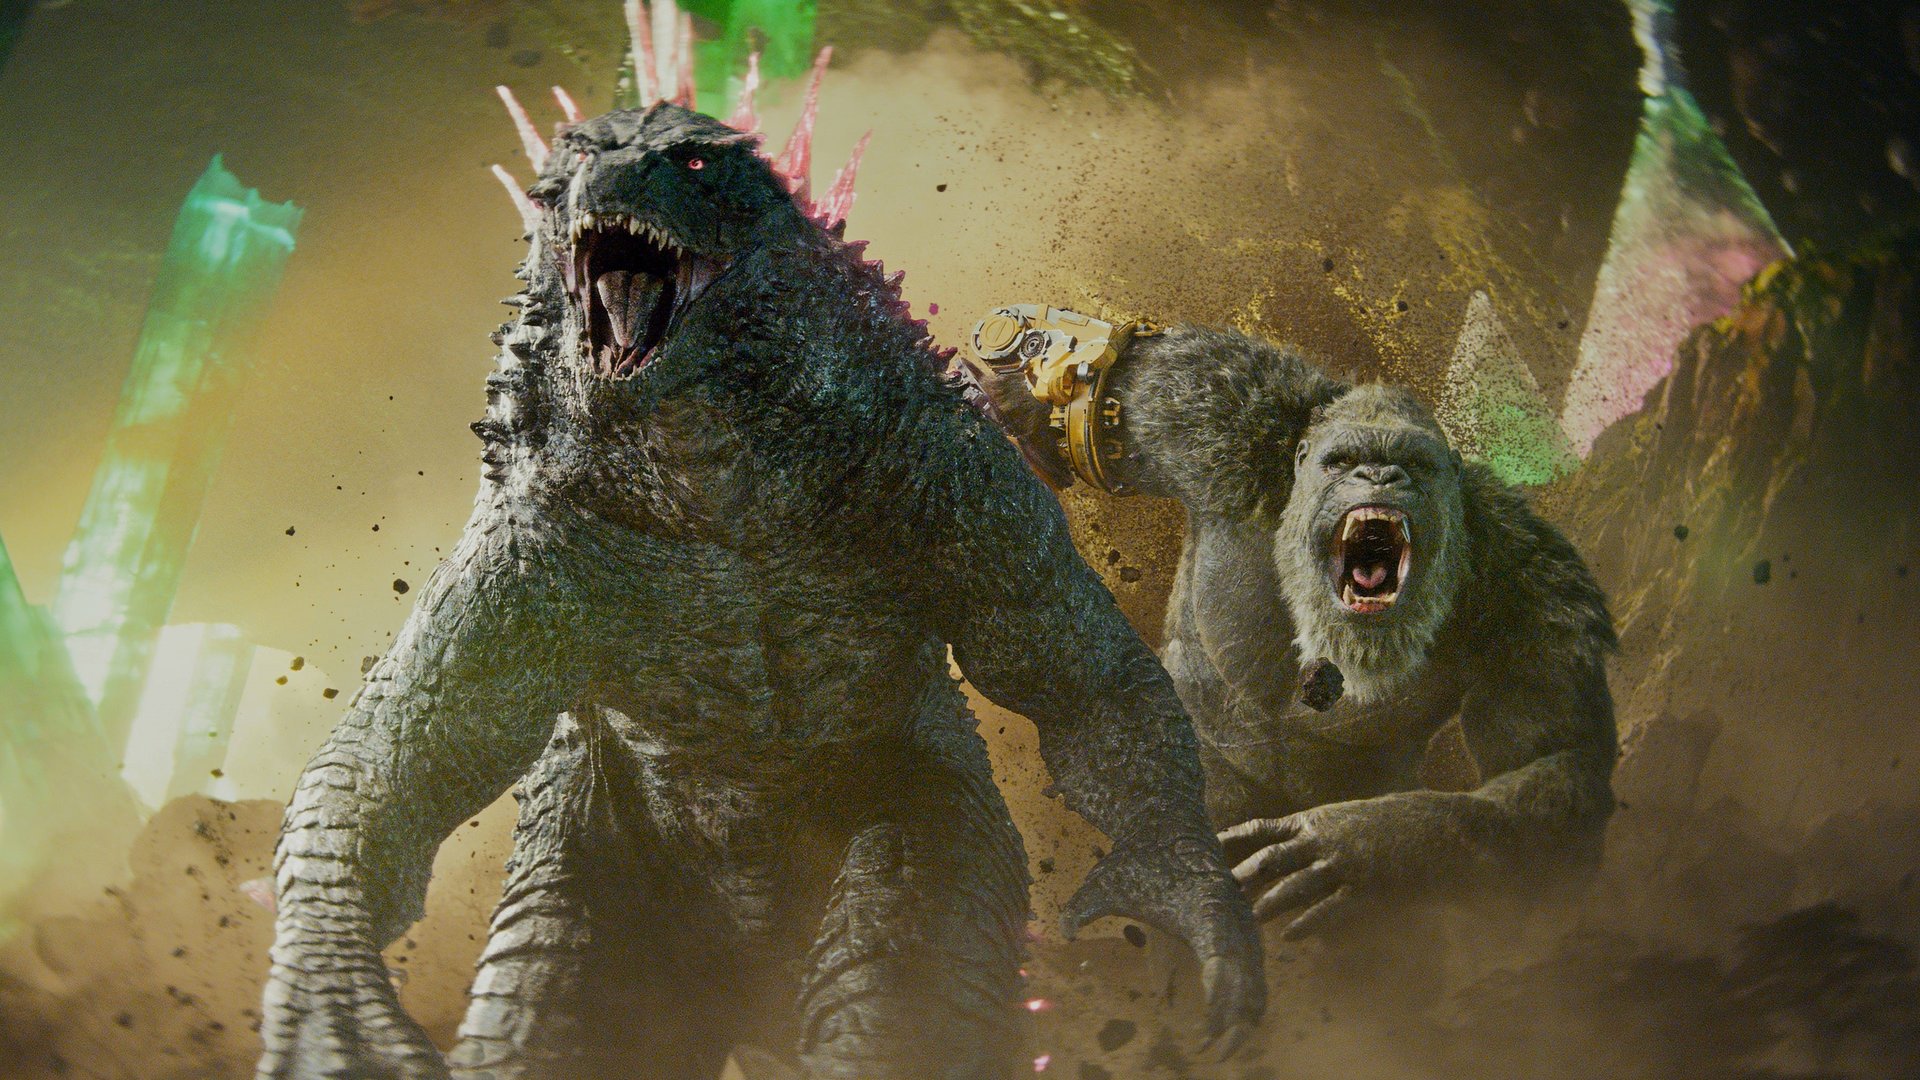 #„Godzilla x Kong“ war schon vor dem deutschen Kinostart ein Hit